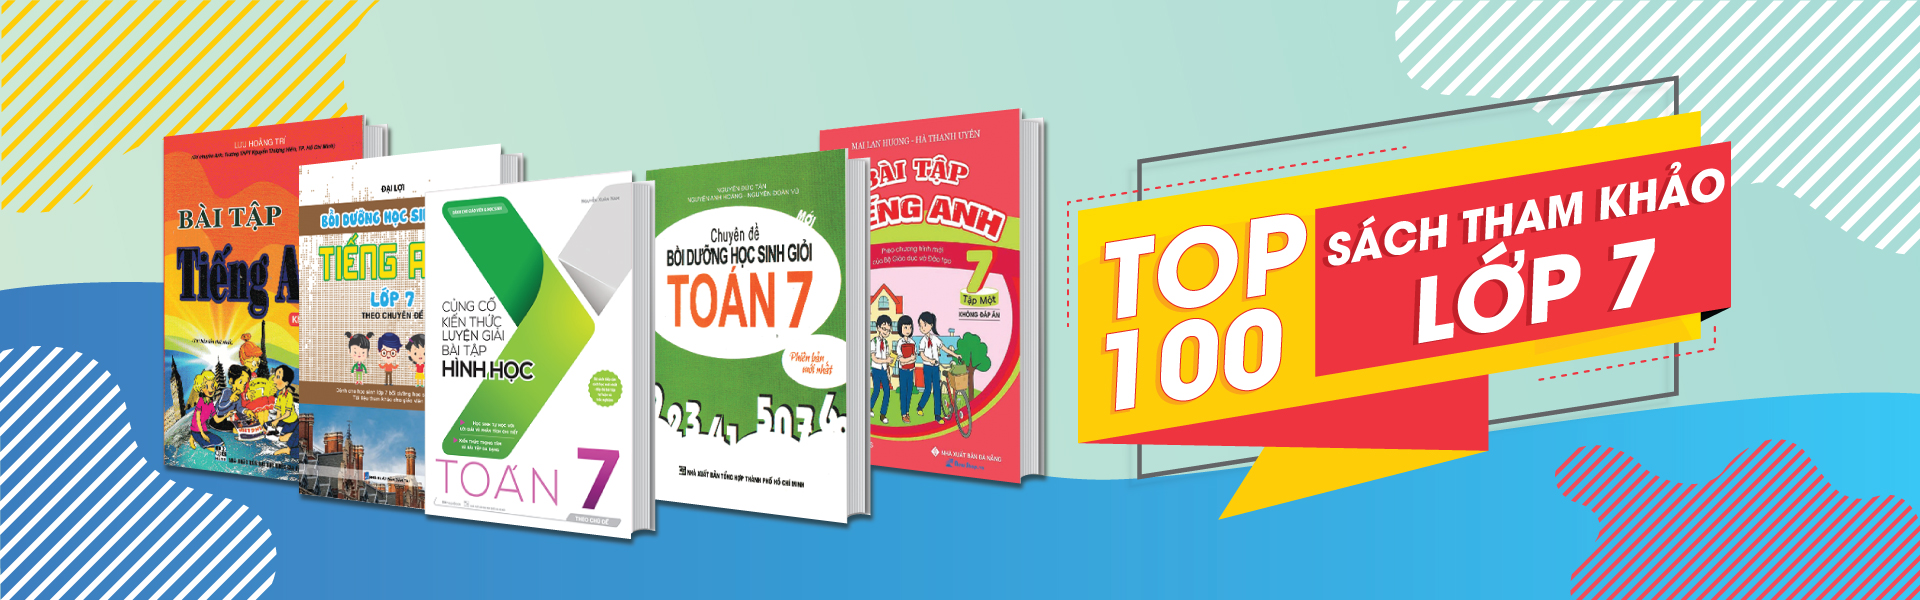 TOP 100 Sách Tham Khảo Lớp 7 Hay Nhất Giúp Học Sinh Tự Học Tại Nhà